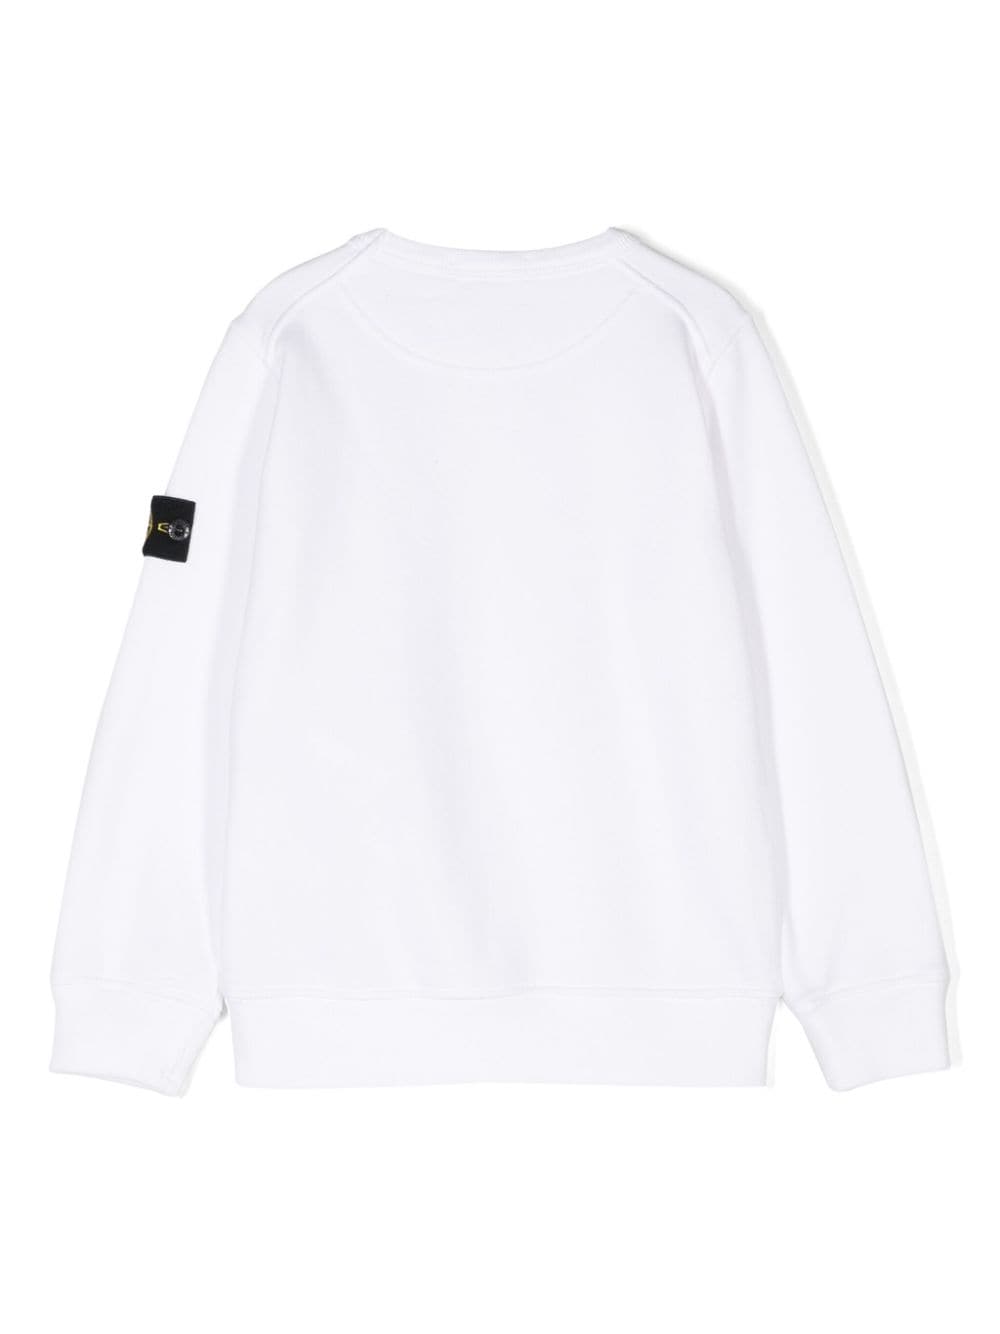 White cotton sweatshirt for children